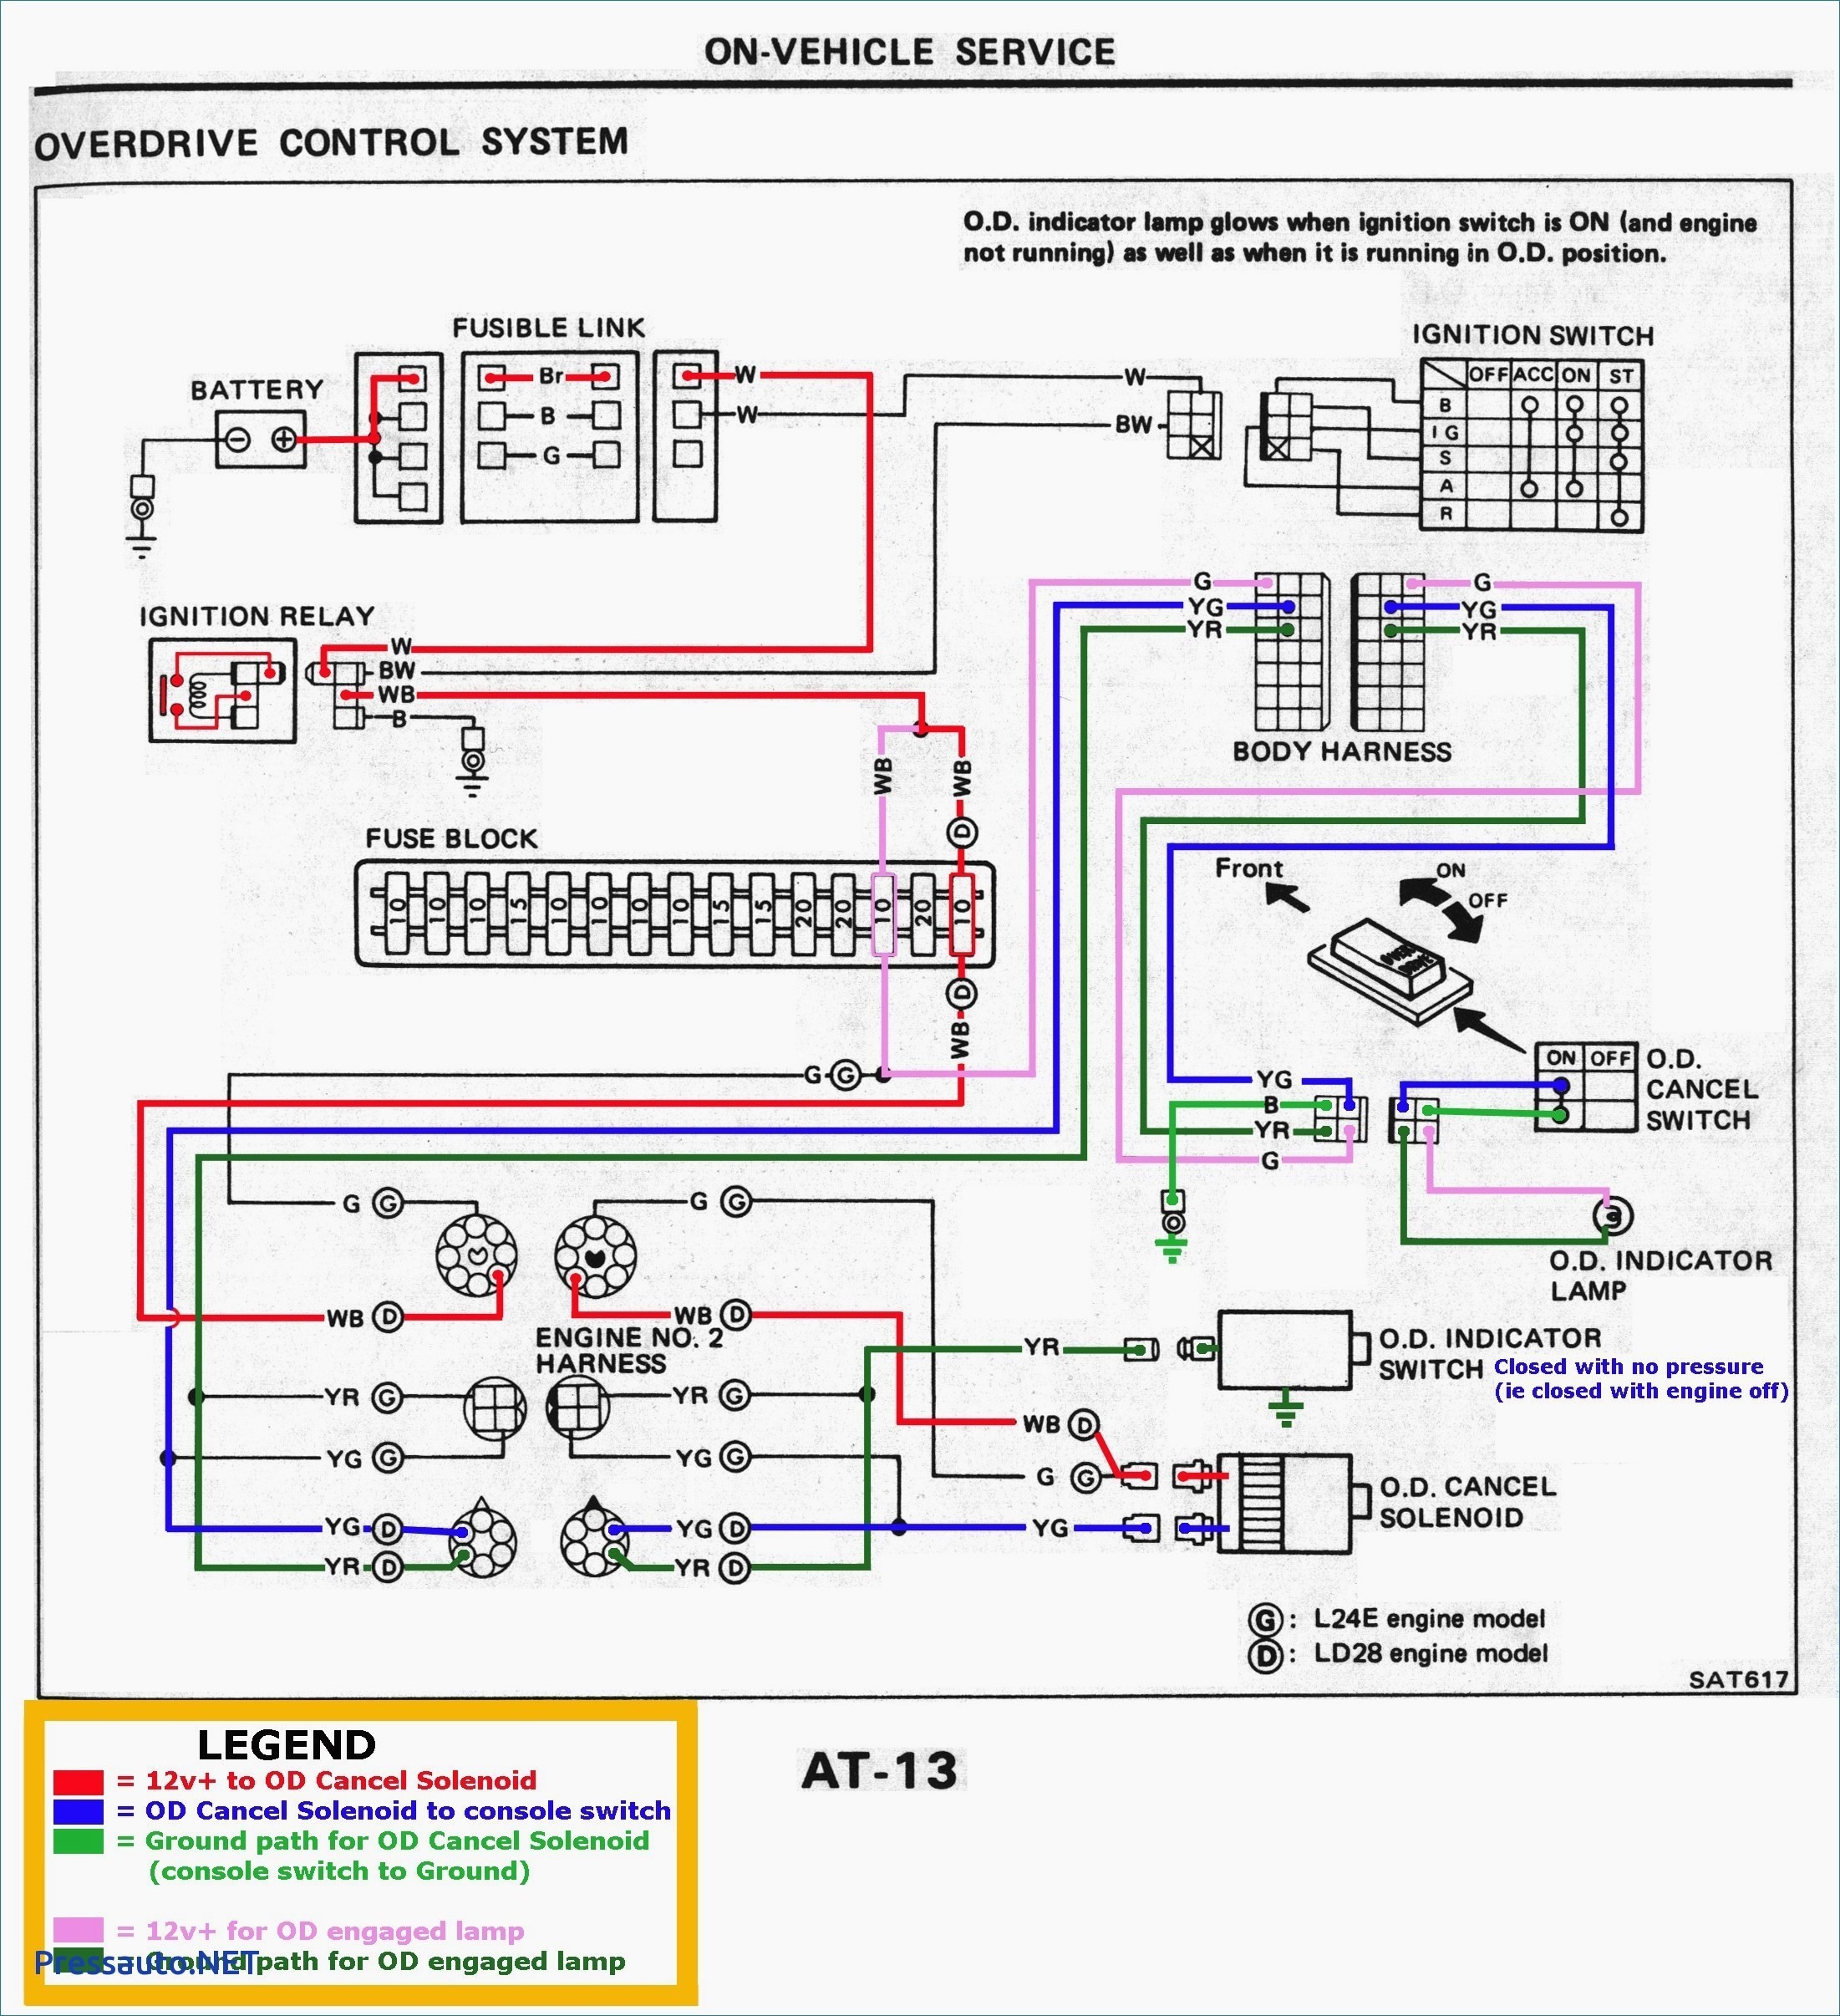 Immersion Heater Wiring Diagram Fresh Wiring Diagram For 3 Phase Immersion Heater Fresh Wiring Diagram